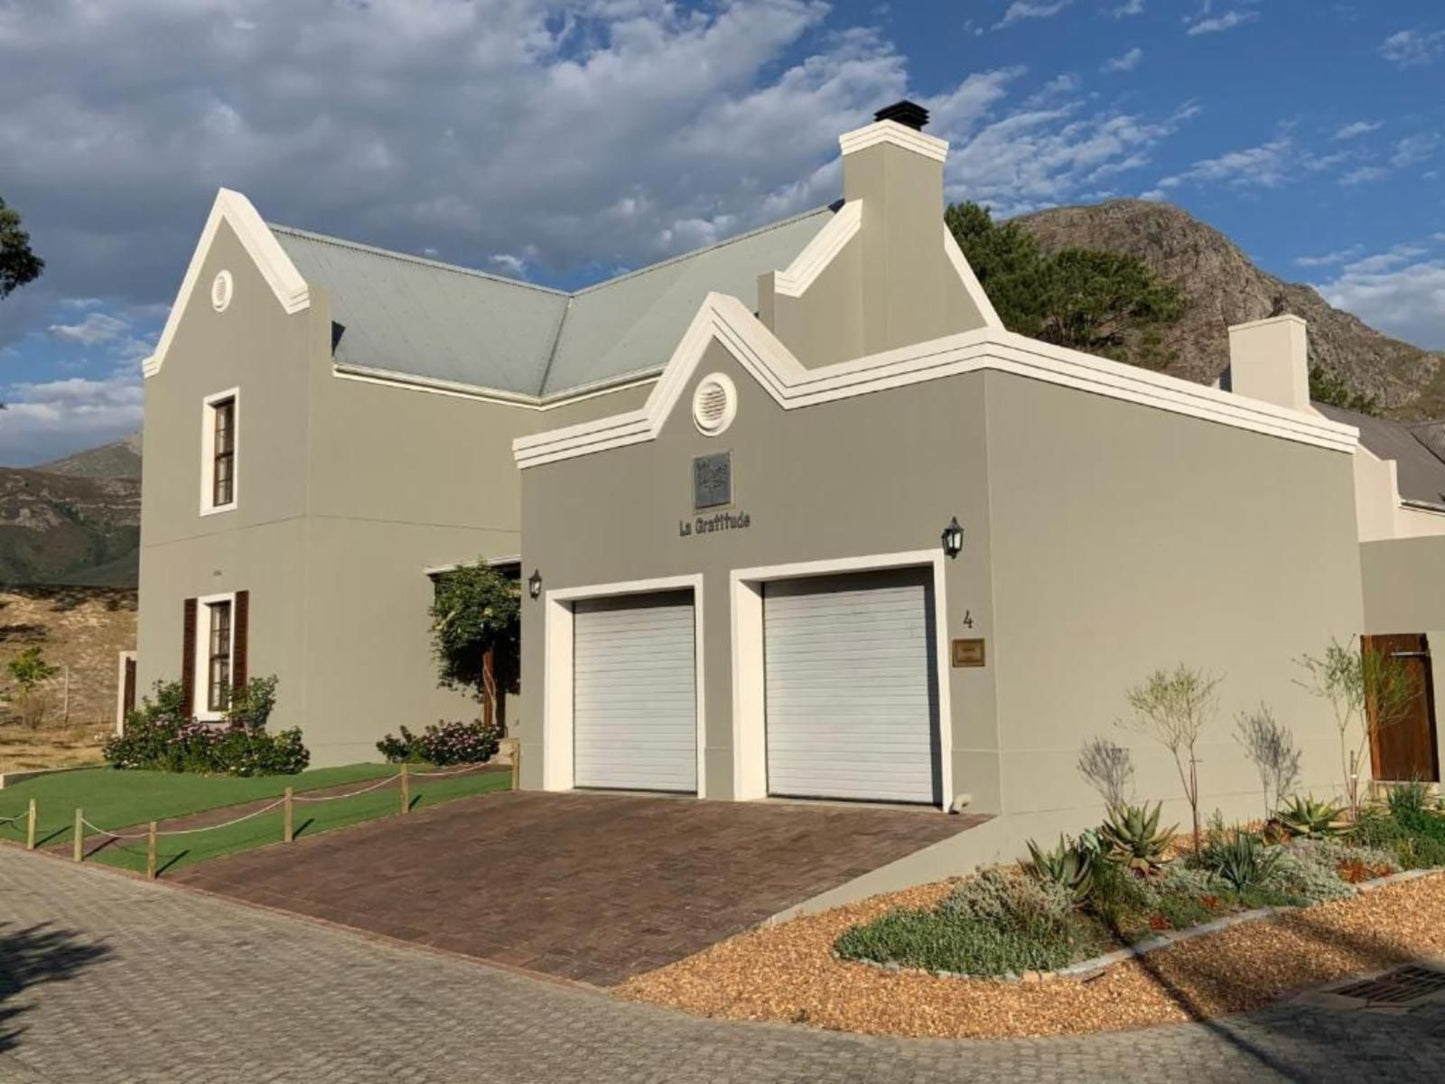 La Gratitude Guest House Franschhoek Western Cape South Africa House, Building, Architecture